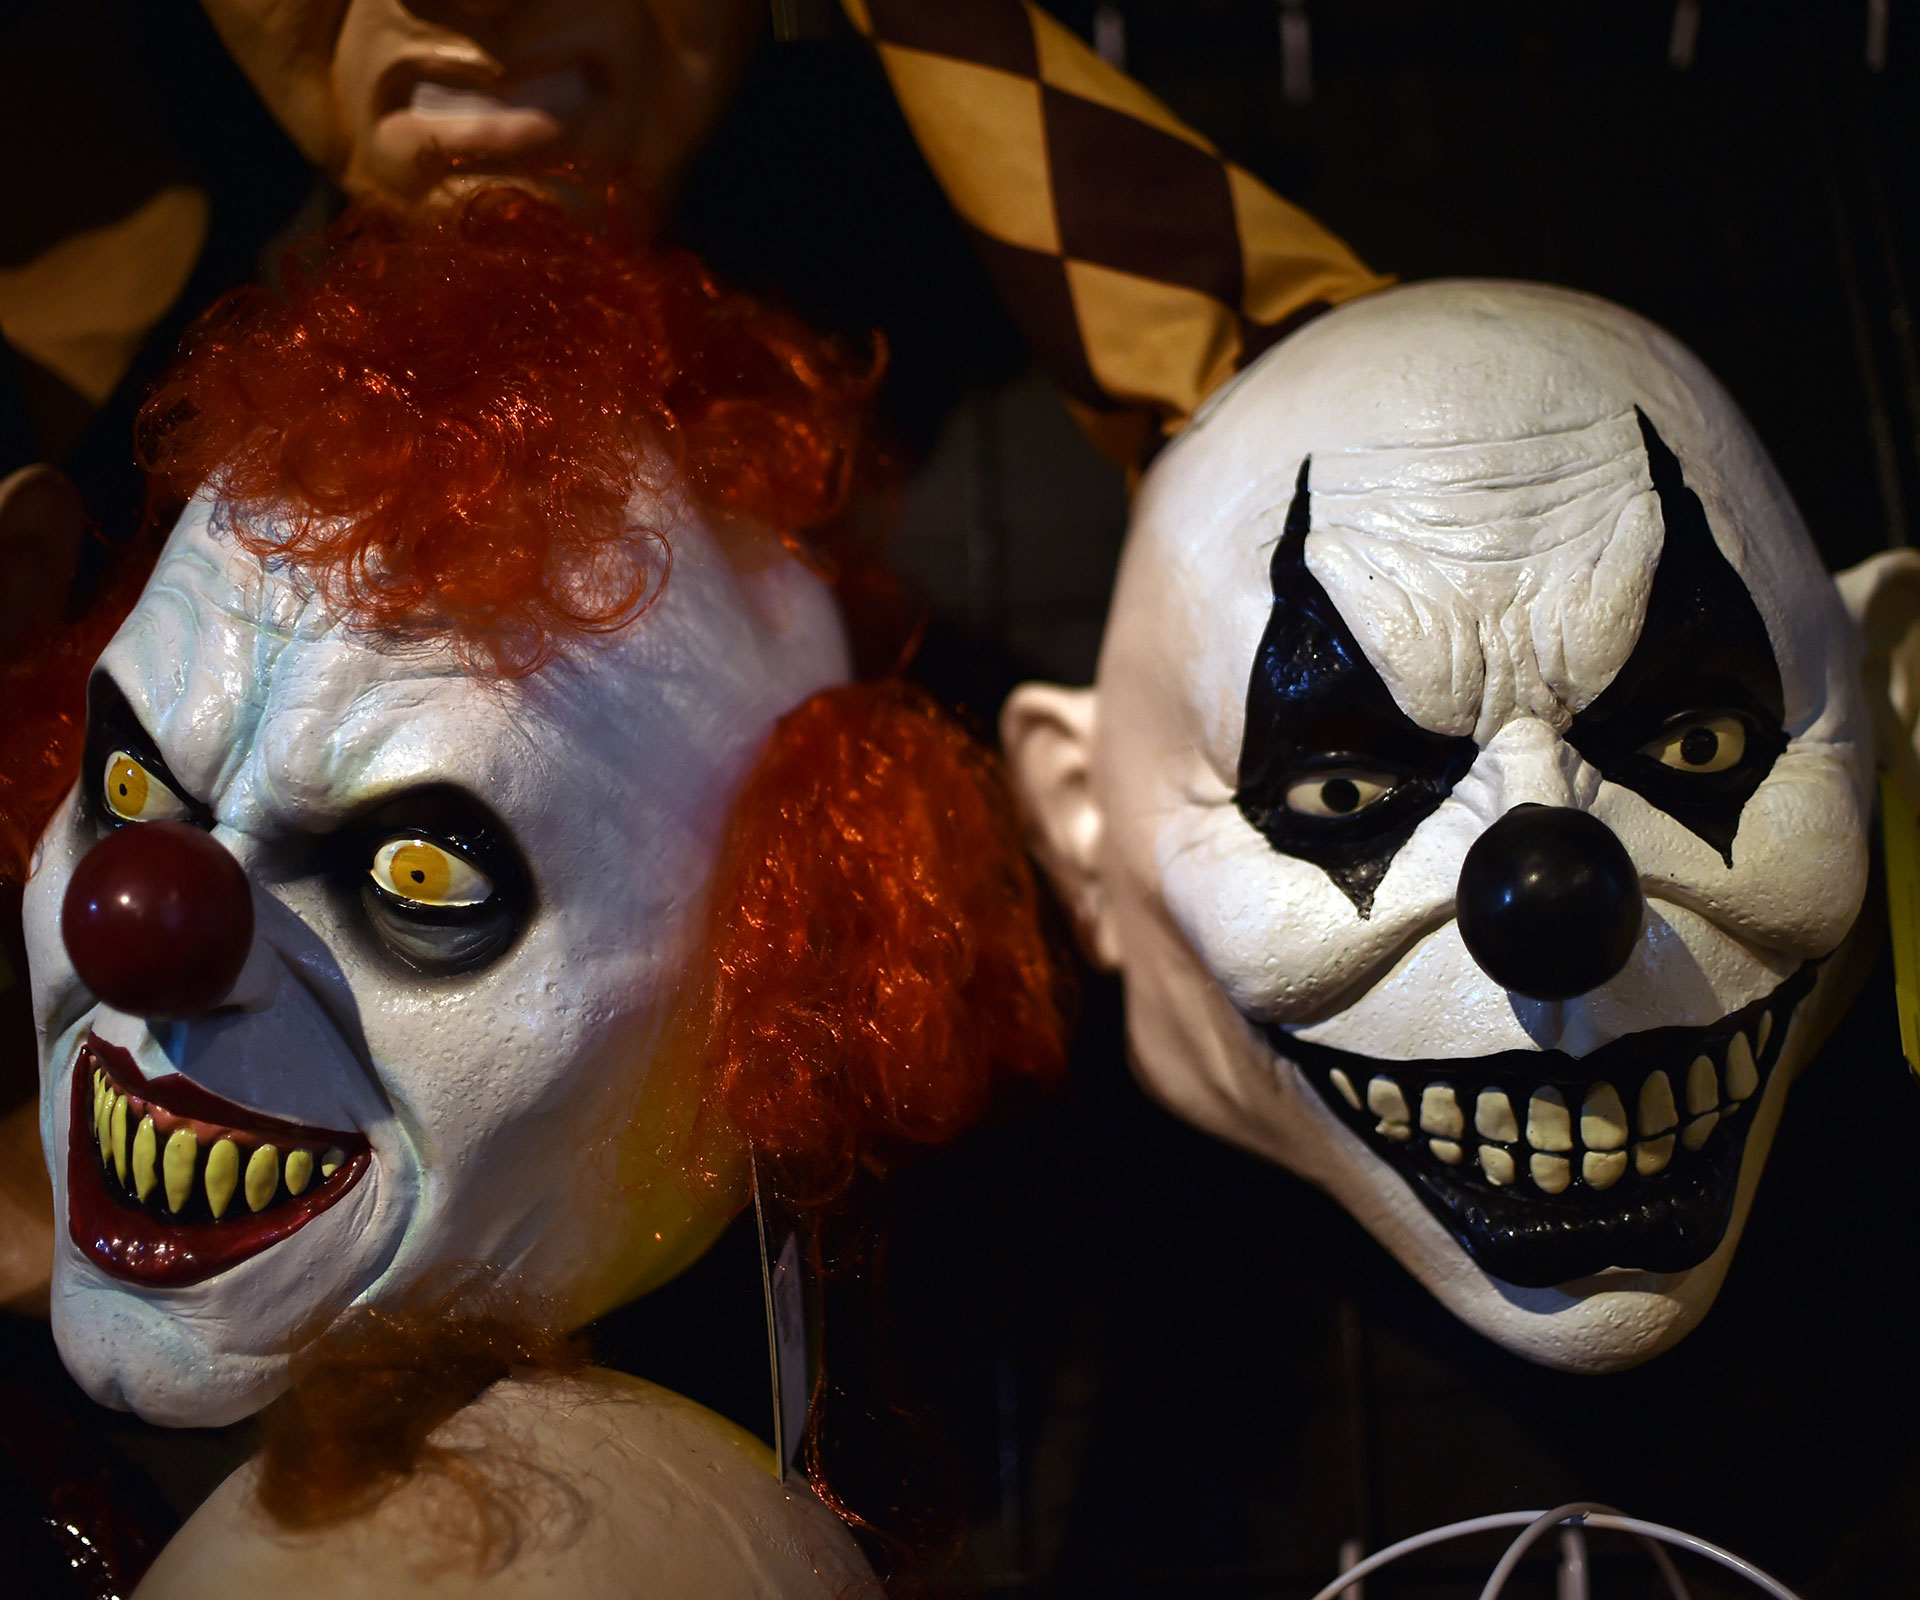 No clowns allowed: Local schools ban clown costumes